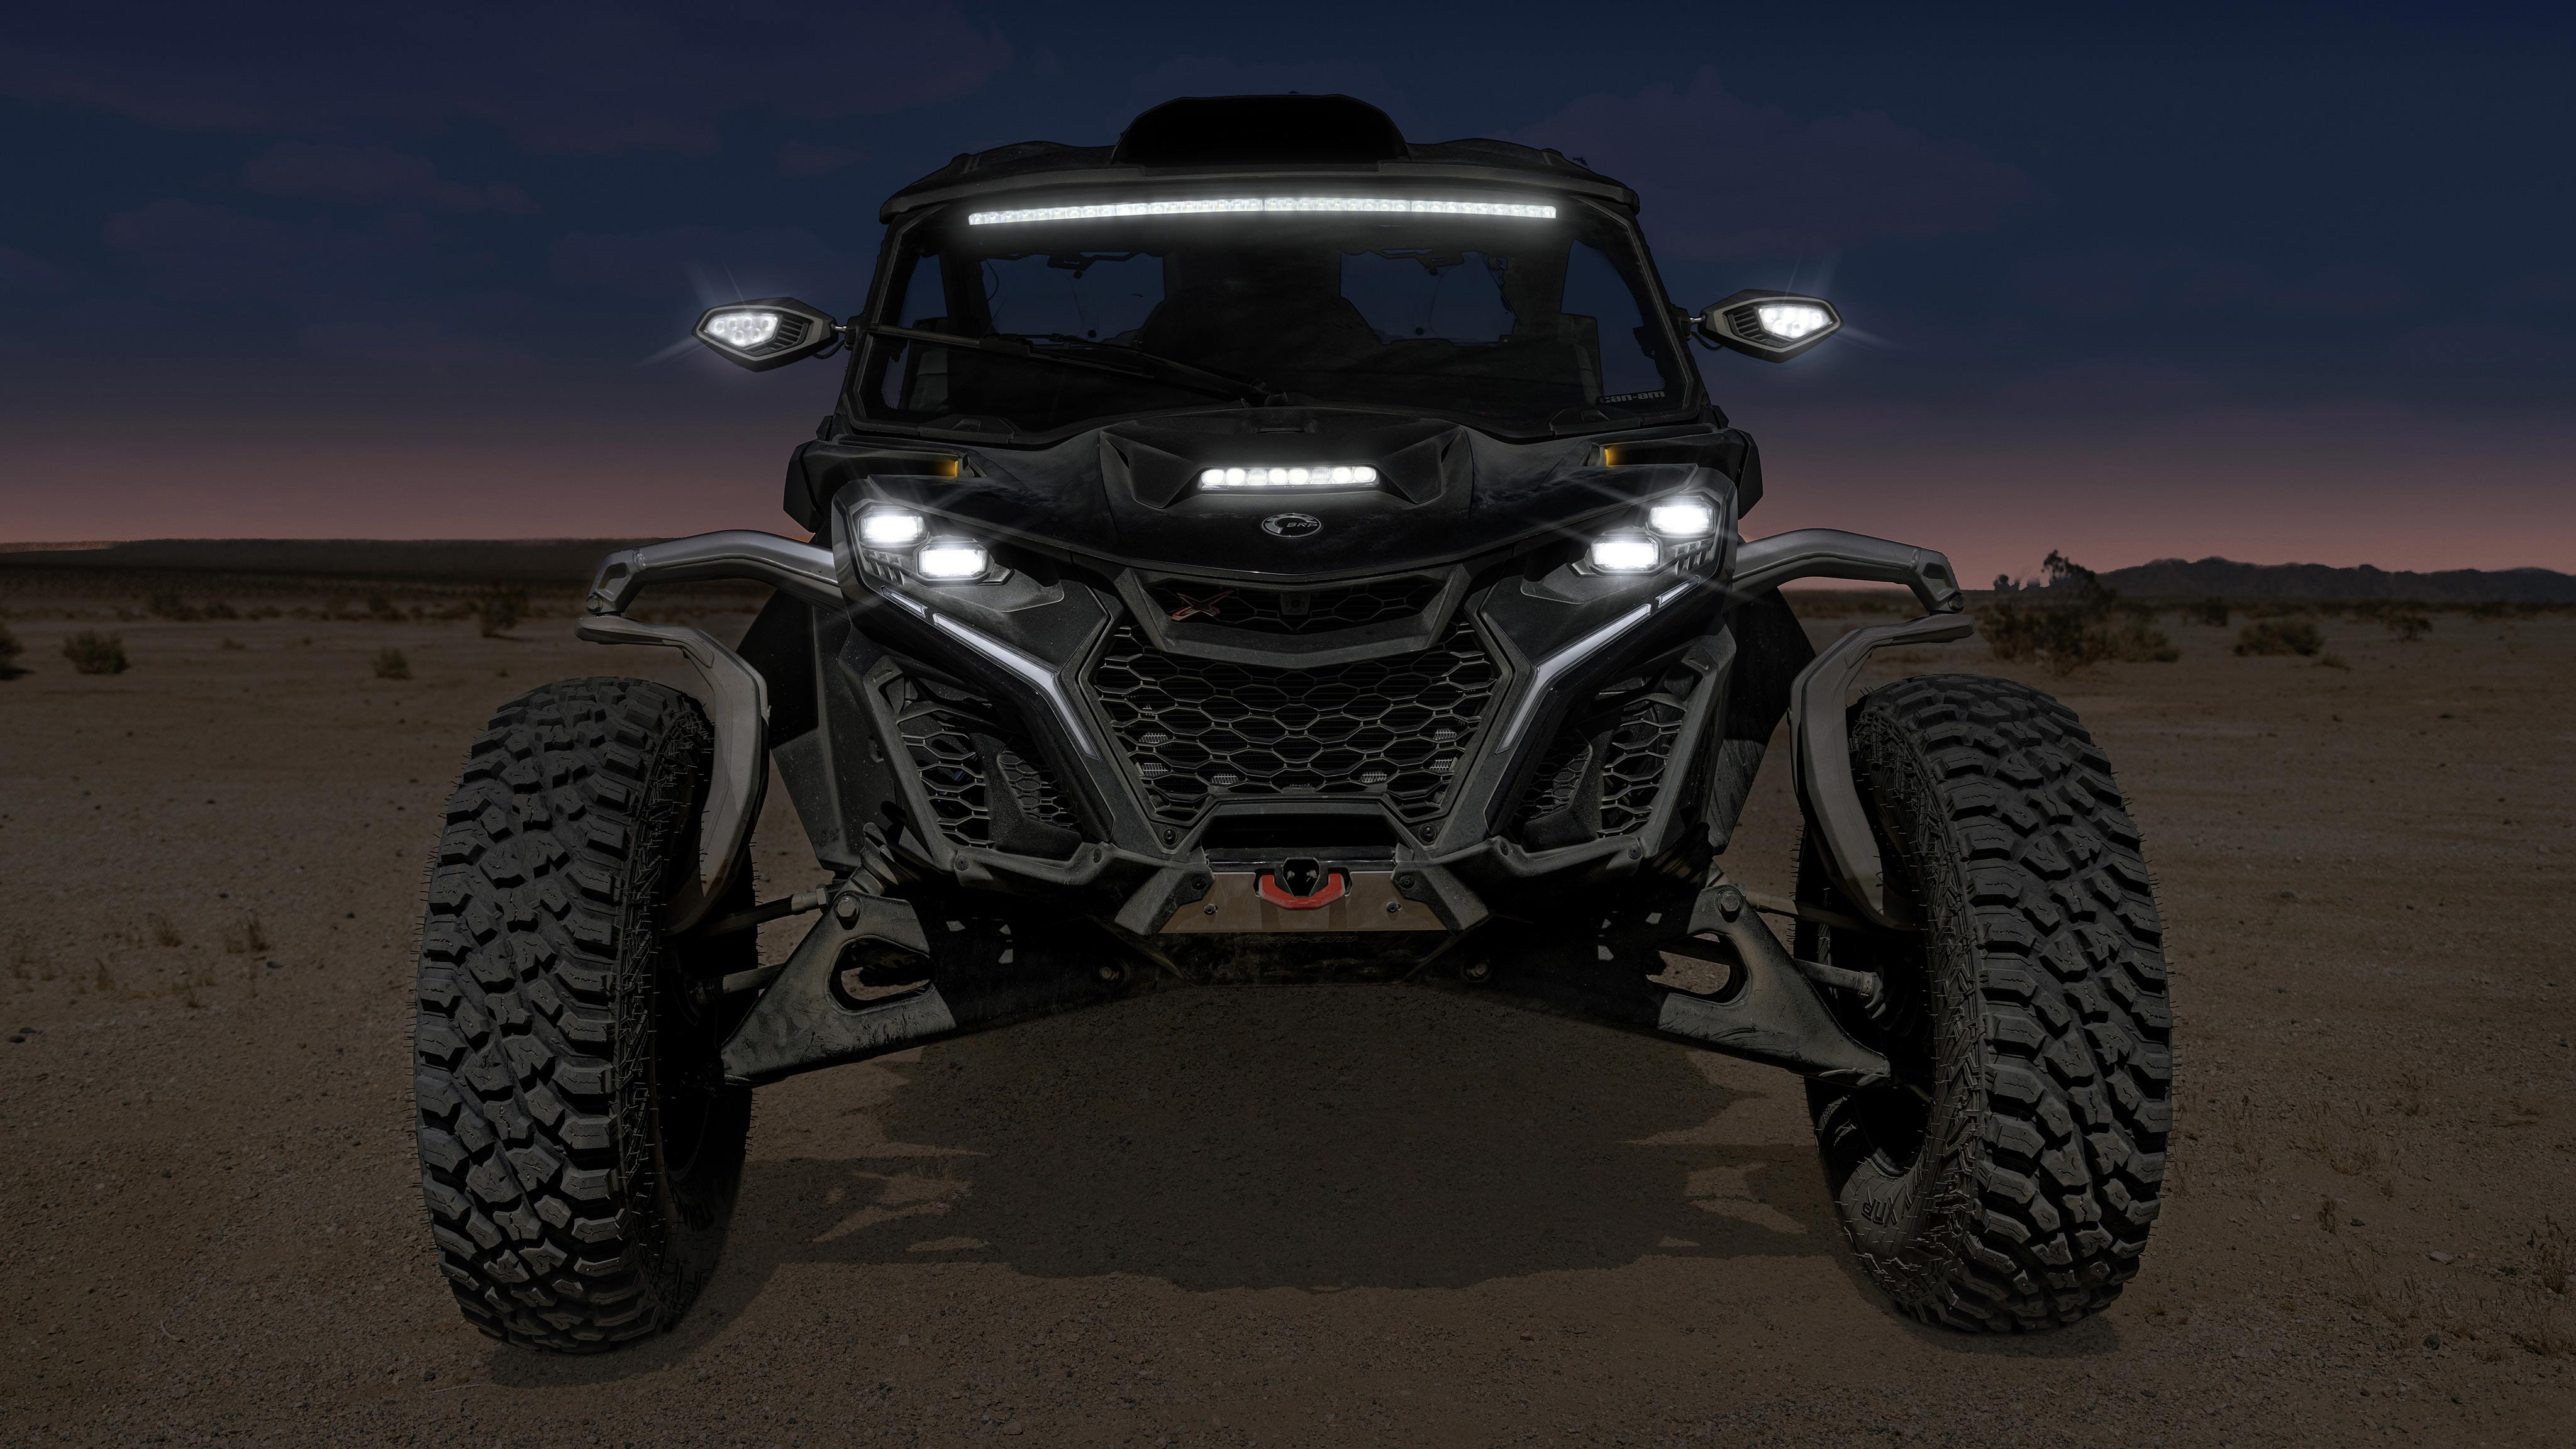 The new Maverick R SSV vehicles in the desert